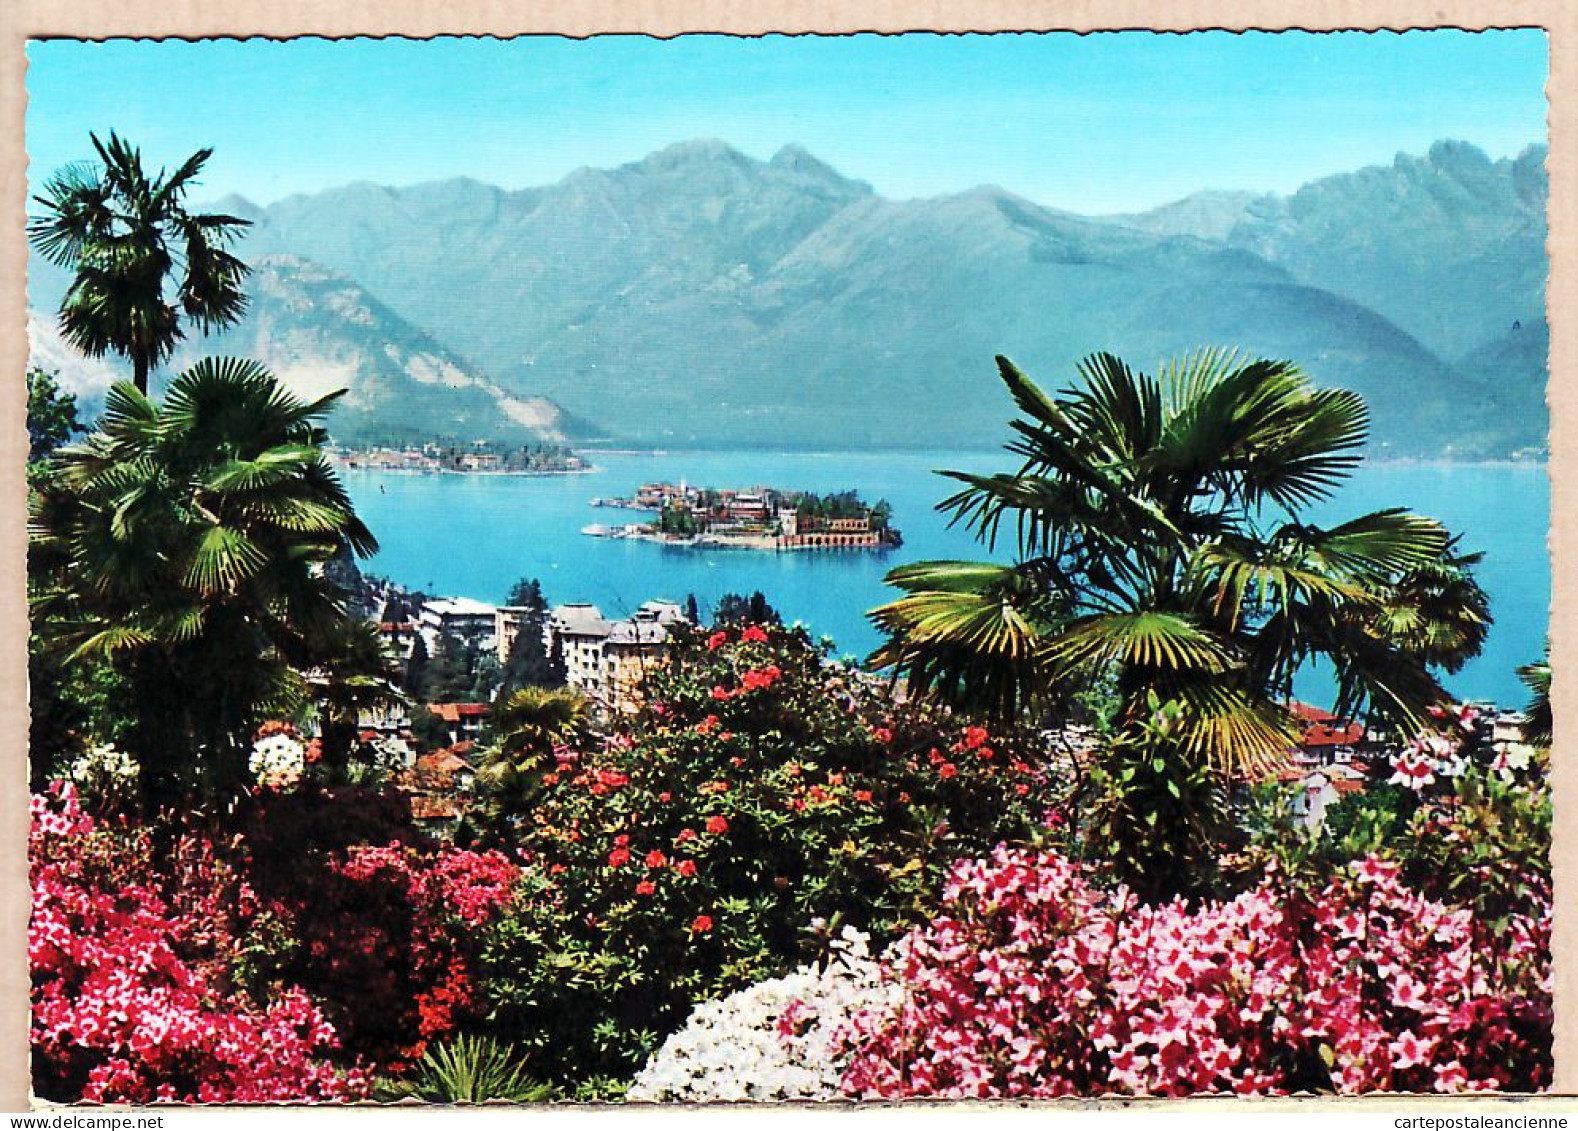 26894 / ⭐ Piemonte STRESA Lago Maggiore PANORAMA 1960s  (Etat Parfait Mint ) - COLOR PRINT PREDA N°177 Italia Italie - Verbania